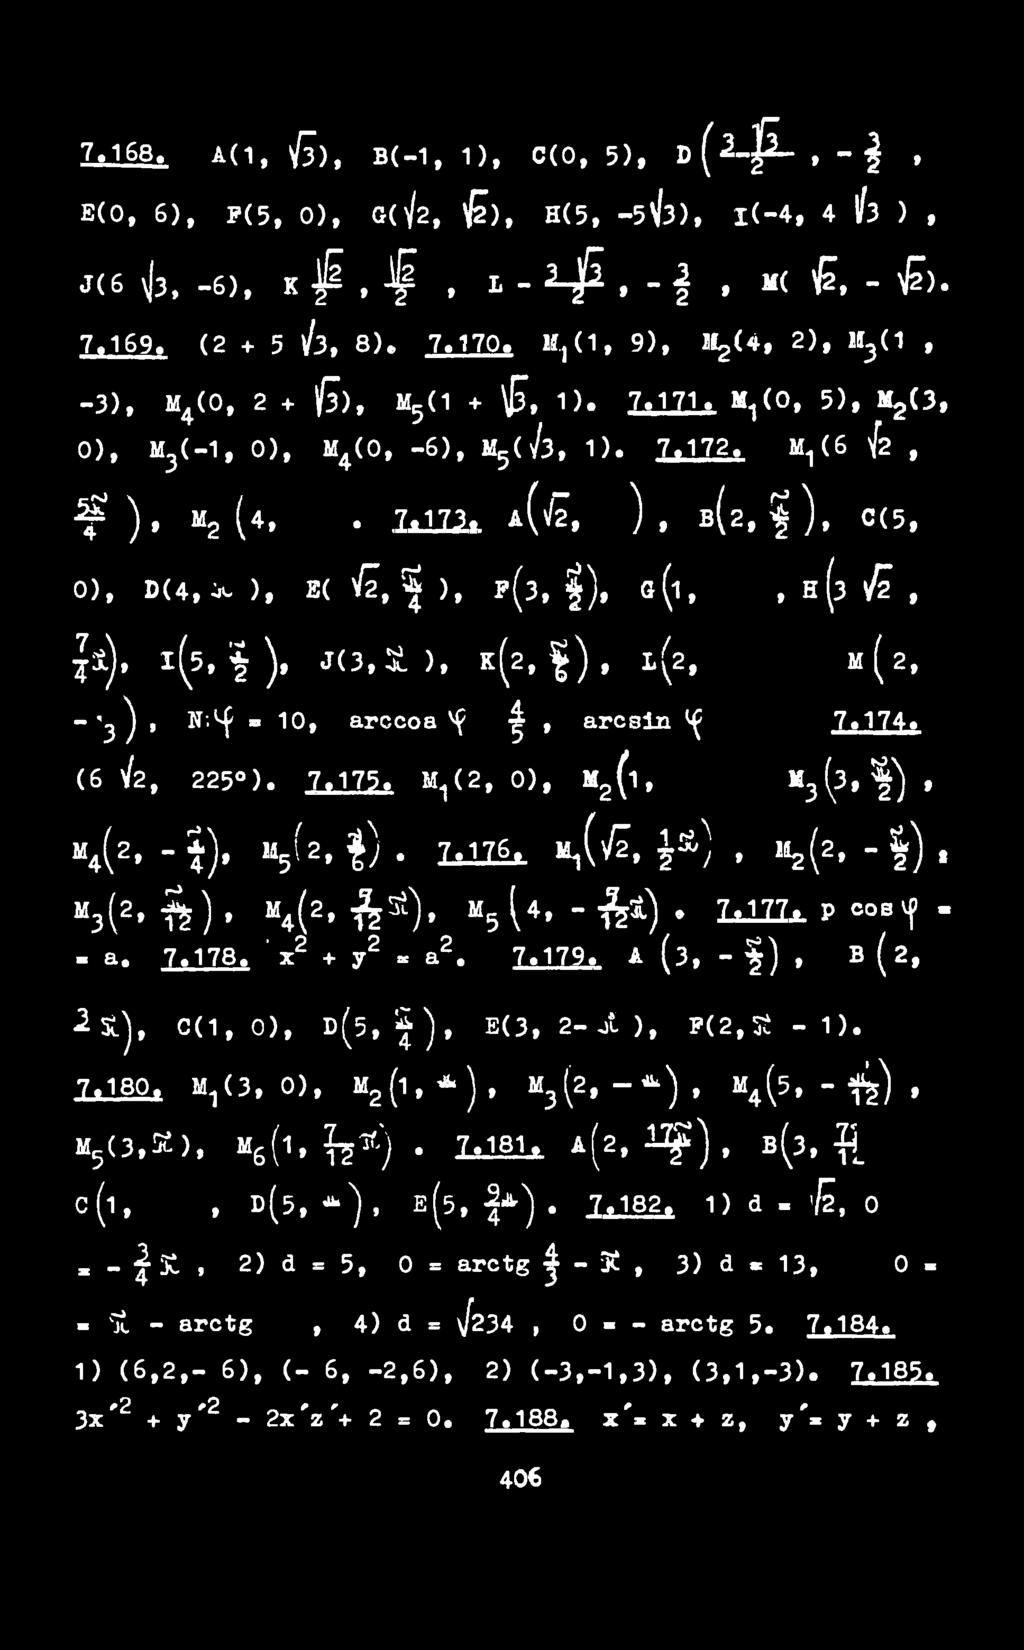 A (3, - f ), В ( 2, 2 Si.), 0(1, 0), d(5, i ), E(3, 2-0i), f(2,5t - 1). 7.180. 11,(3,0), M 2 (1, *), M 3 (2, -*), M 4 (5, - f^), M 5 ^(3,K). M 6(i, 1rf ). 7.18b a(2, 1Ç), в(з, _ с (1,, D(5, *), E(5, I*).